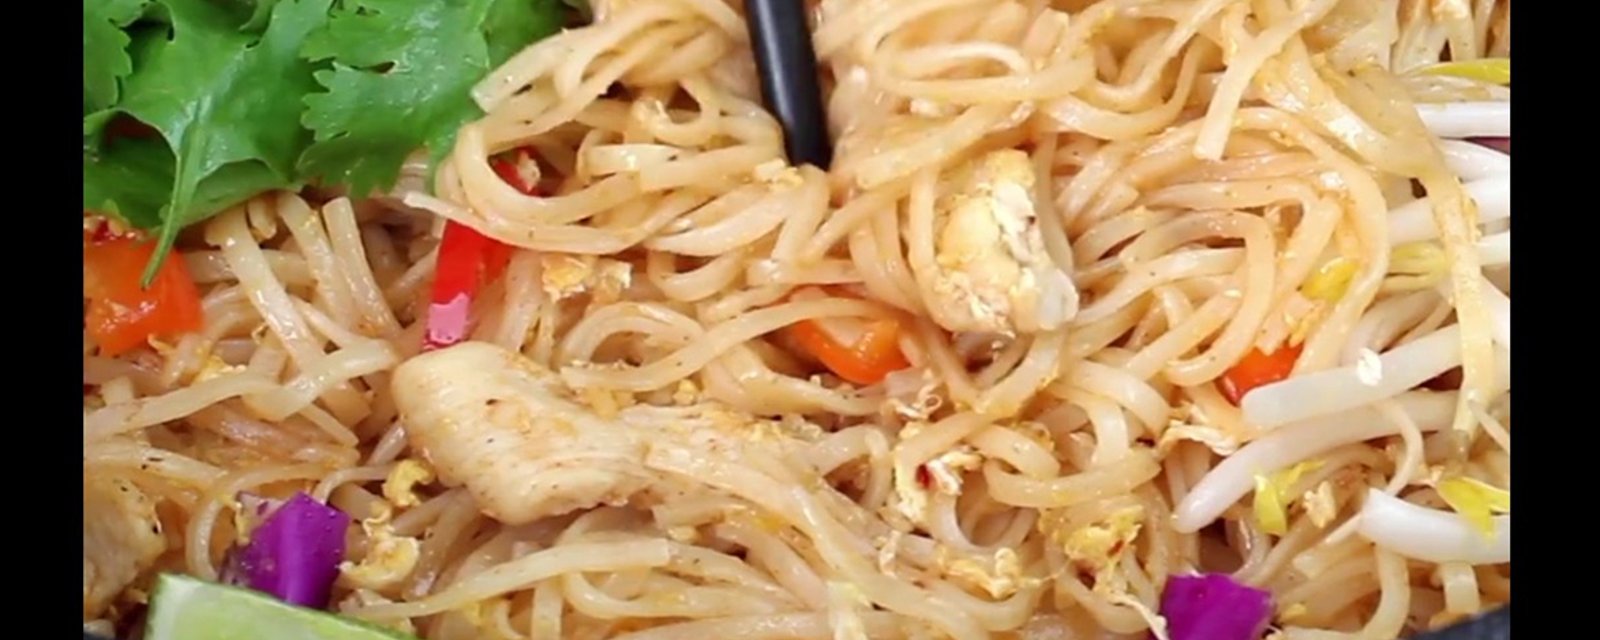 Saveurs authentiques, ce pad thai se retrouve dans votre assiette en 30 minutes... TOP CHRONO!